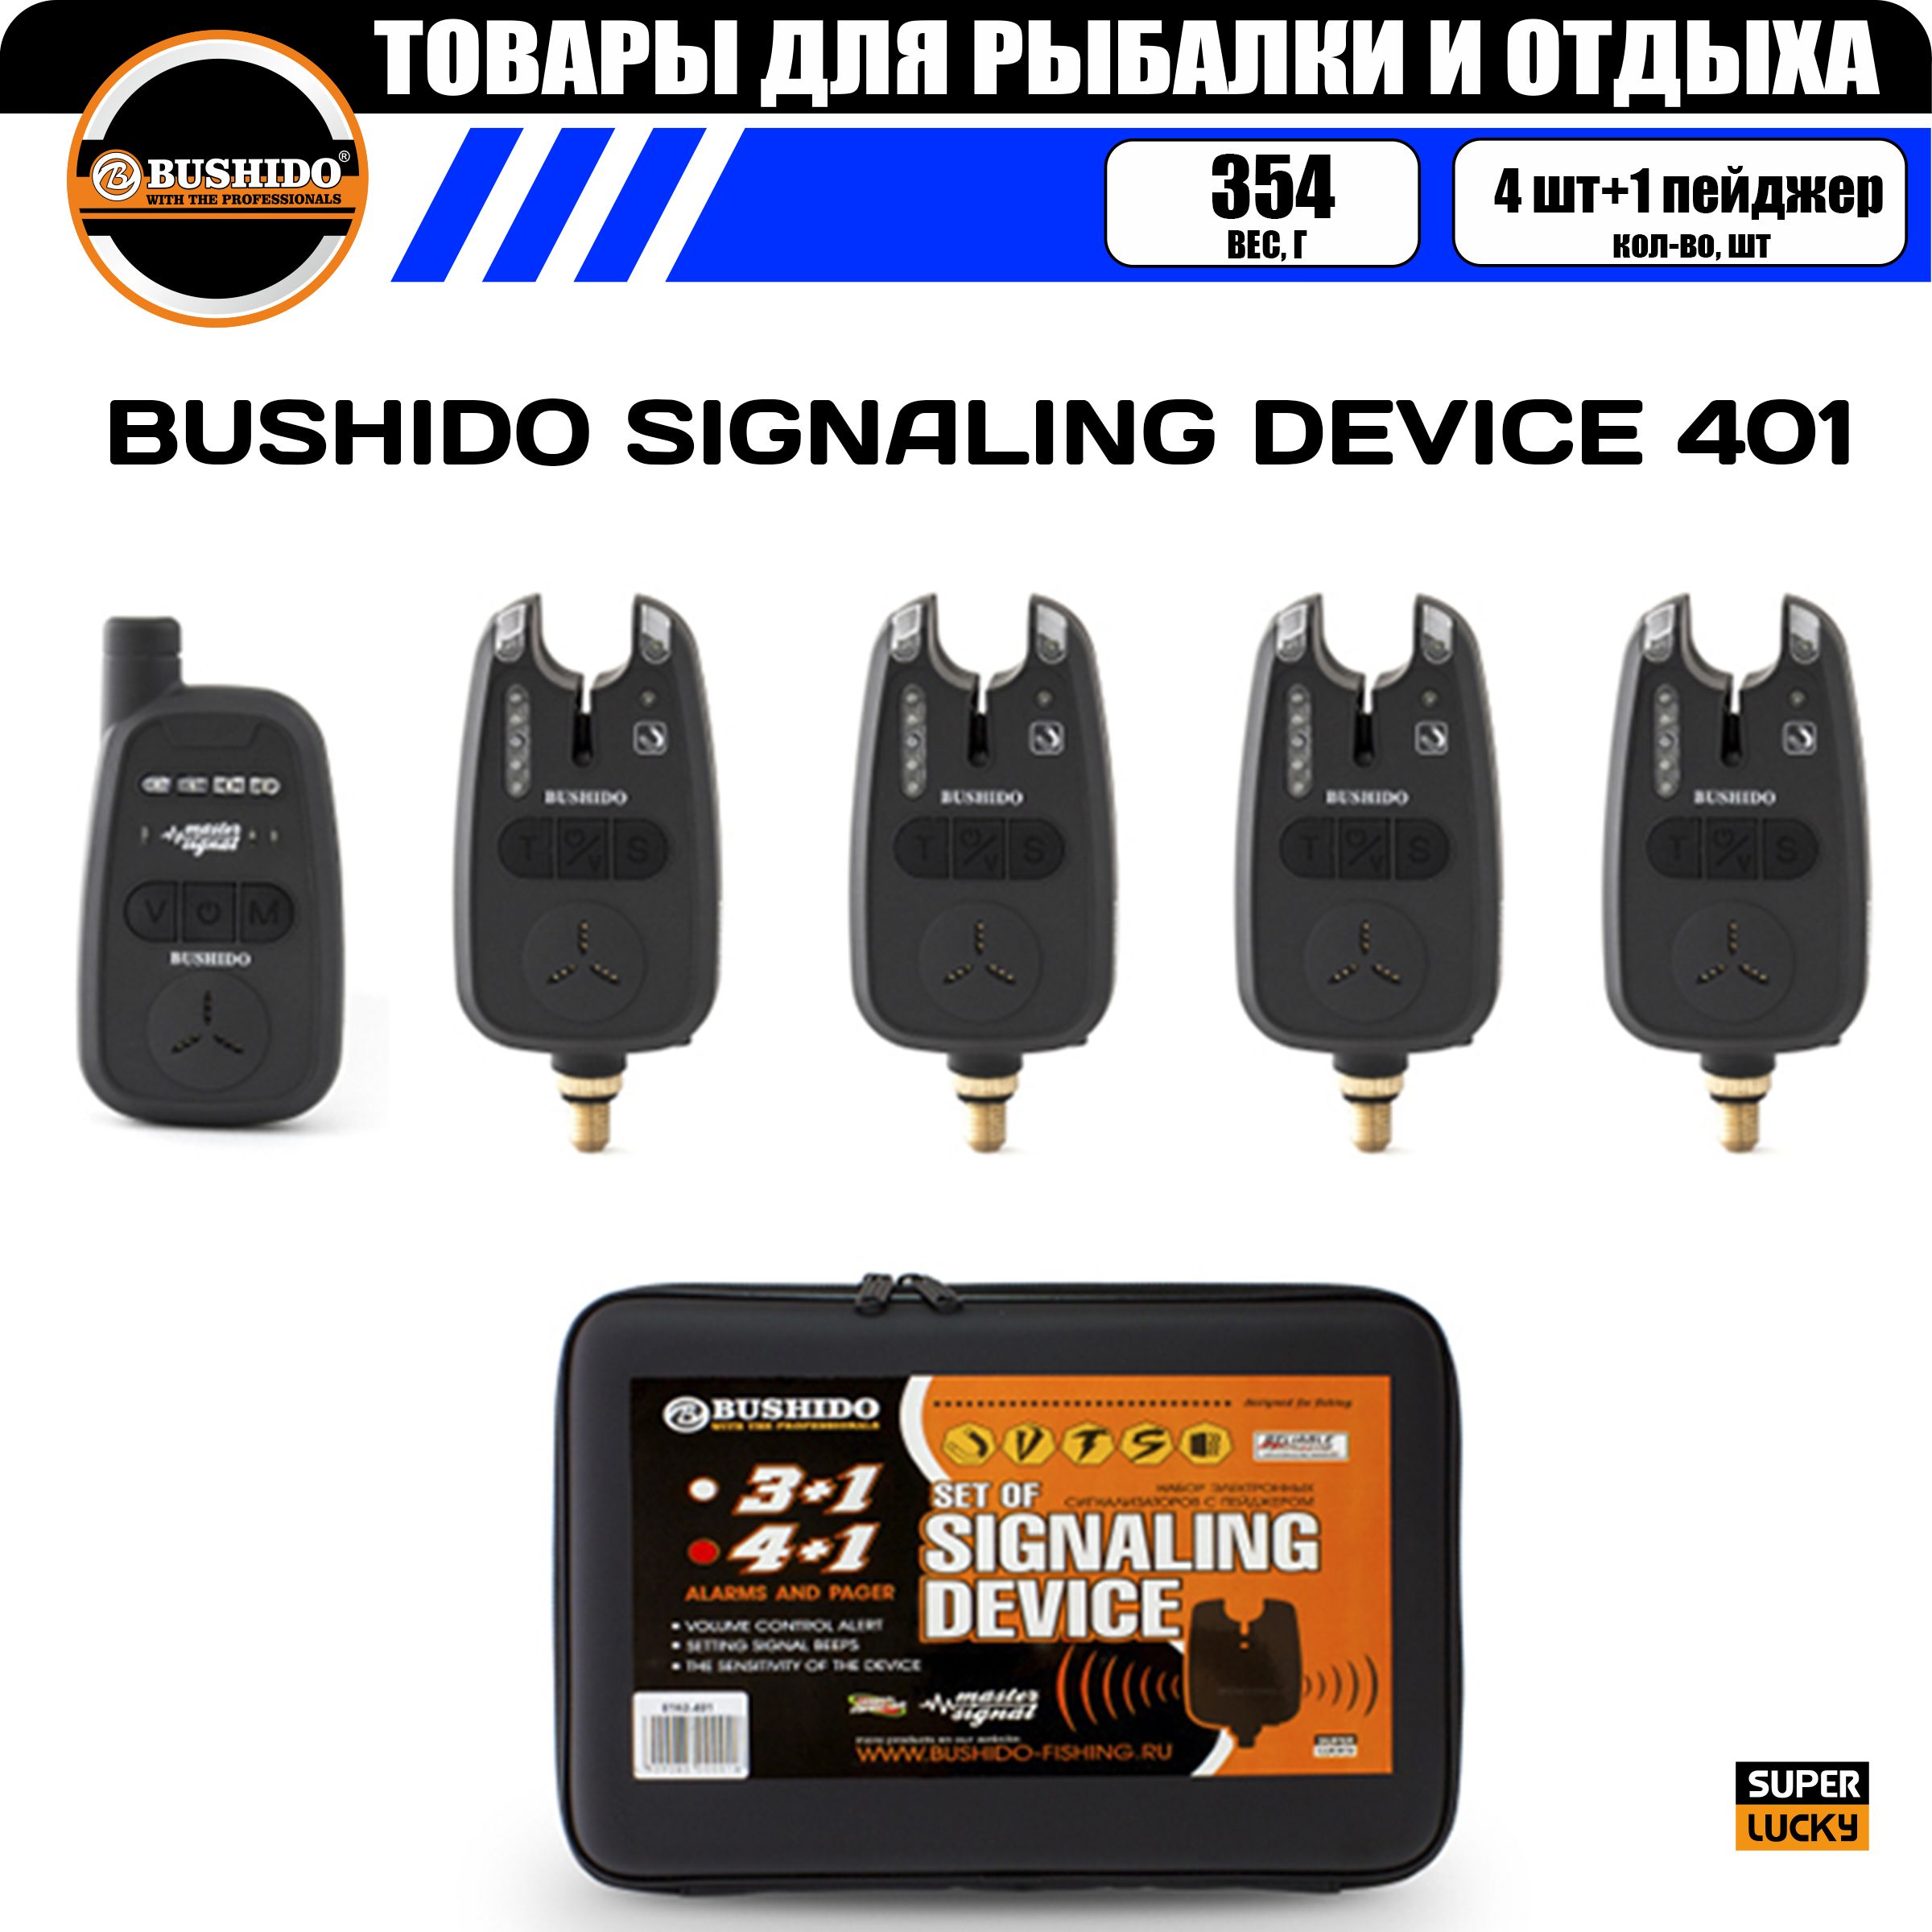 Набор сигнализаторов поклёвки BUSHIDO SIGNALING DEVICE 401 (4шт+1пейджер), для карповой